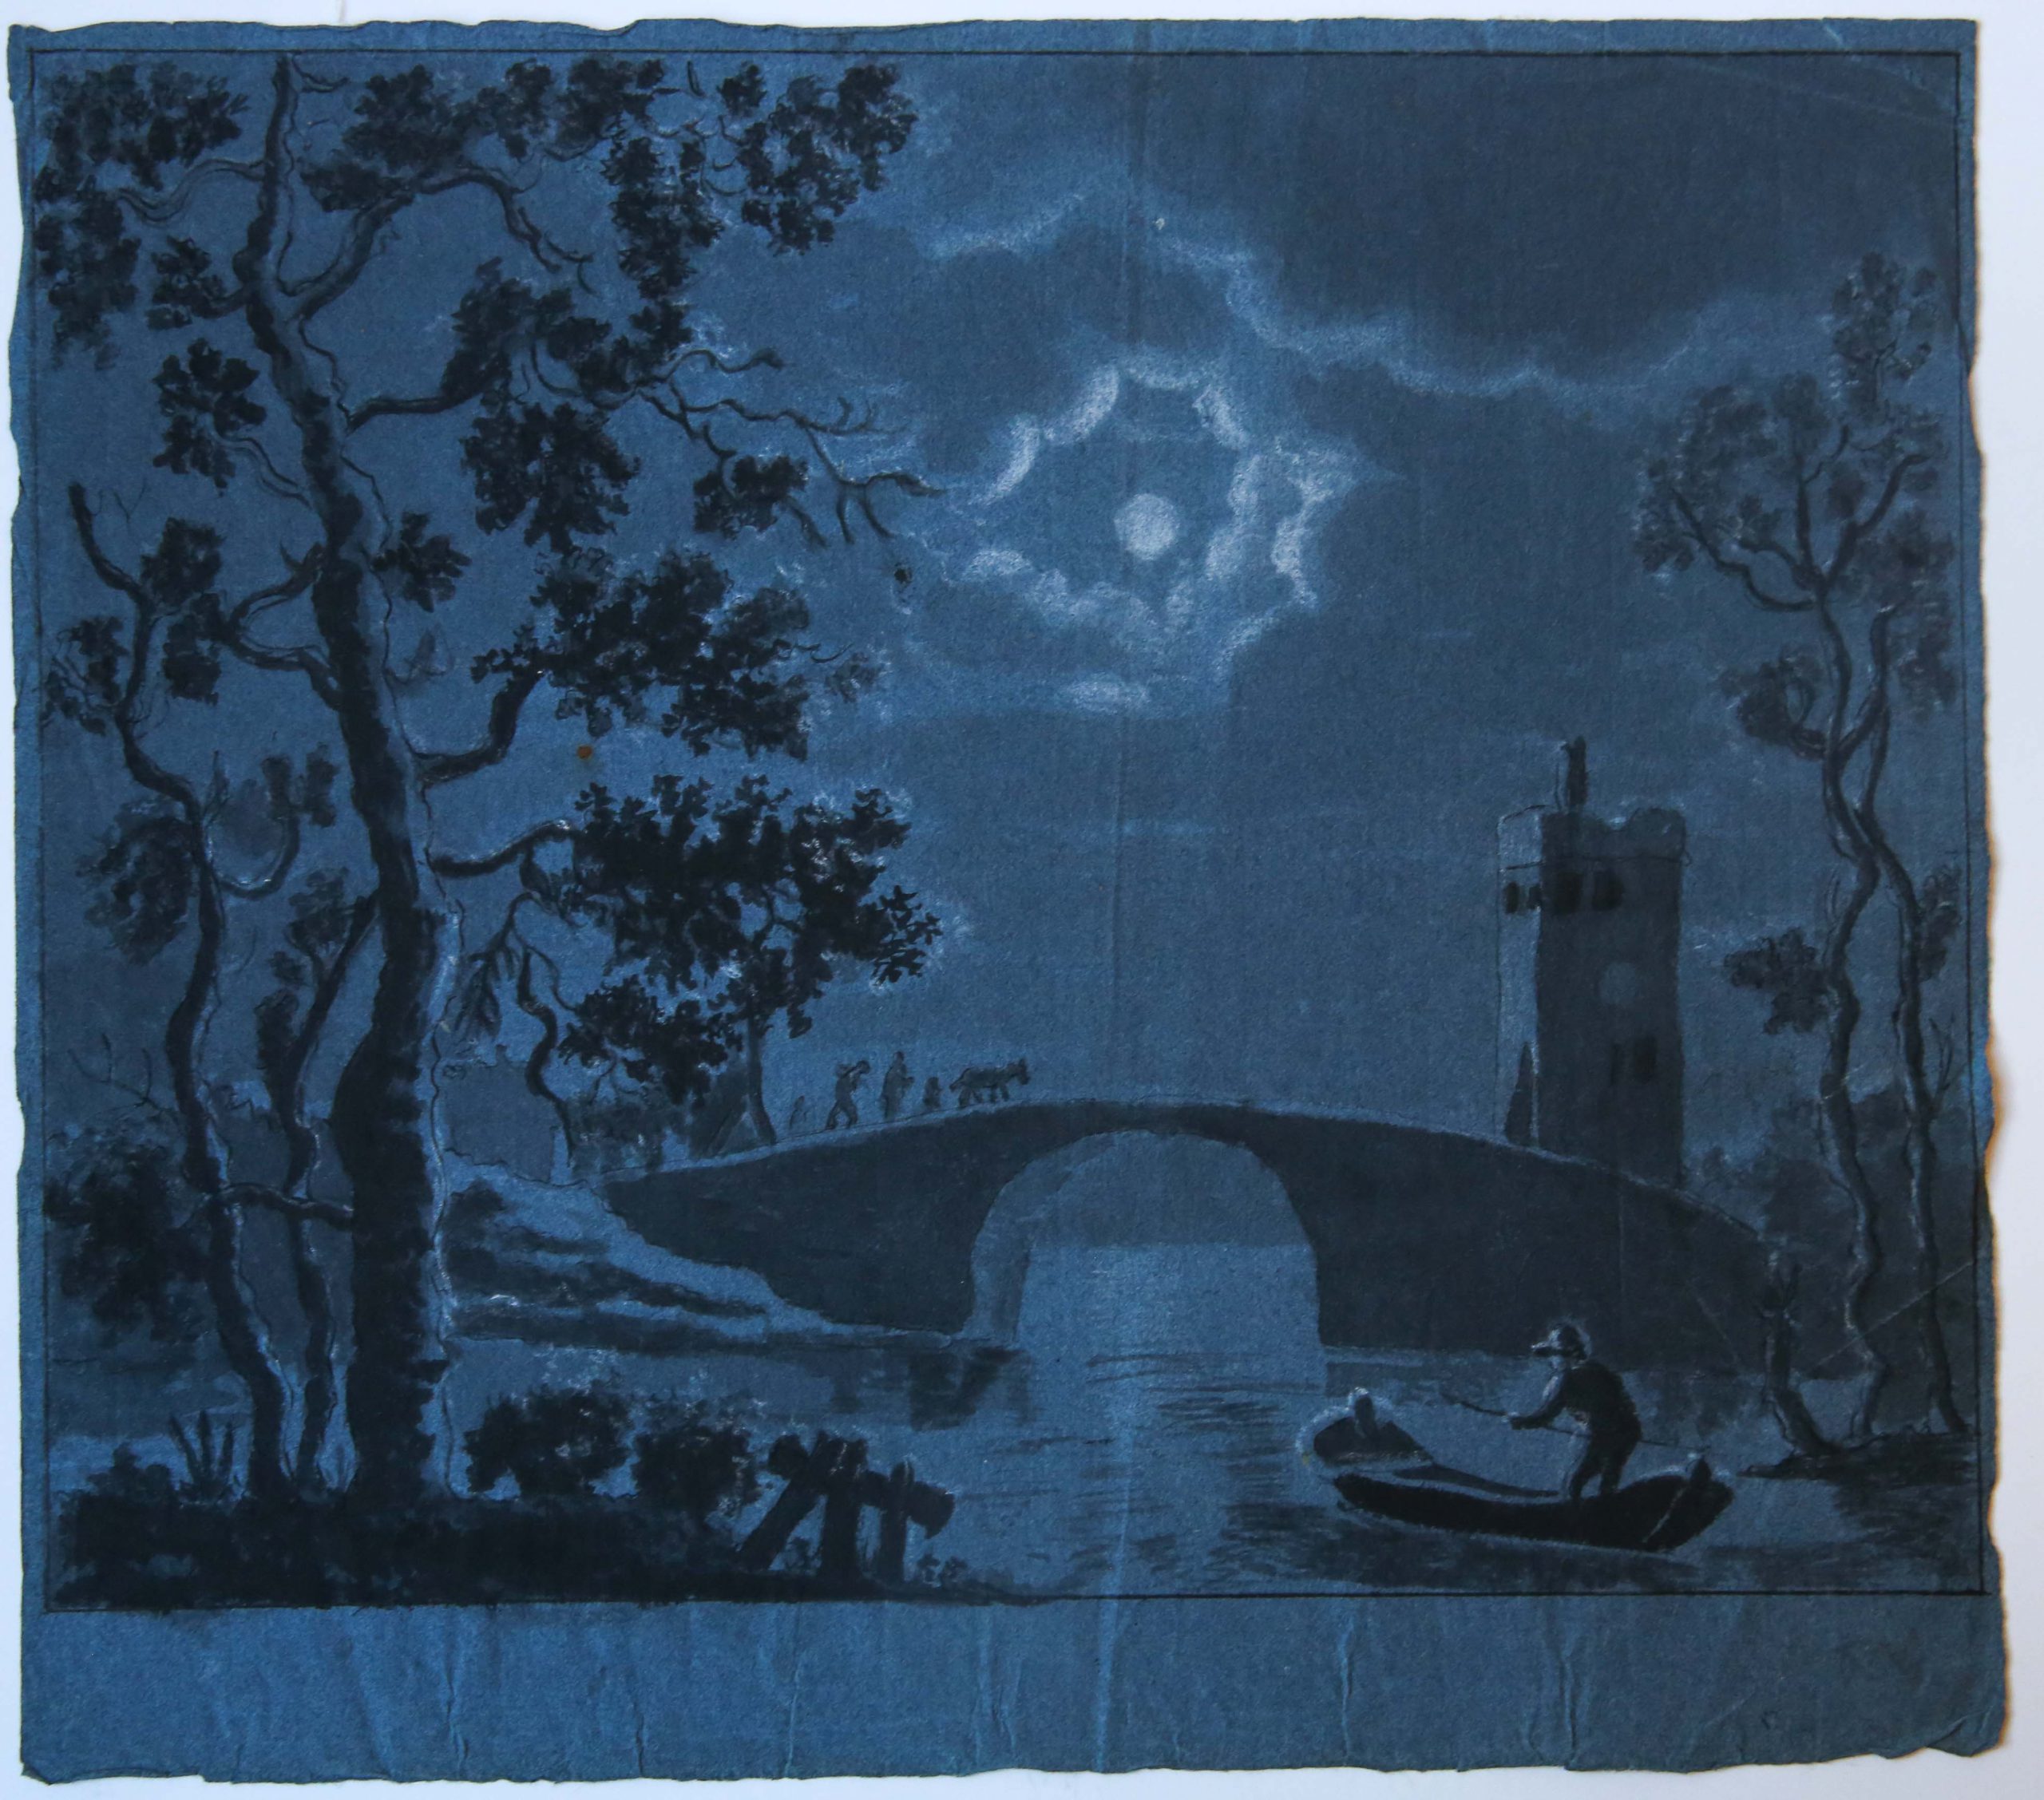 [Antique drawing/tekening] River landscape at night (rivier bij nacht met maan), ca. 1850-1900.